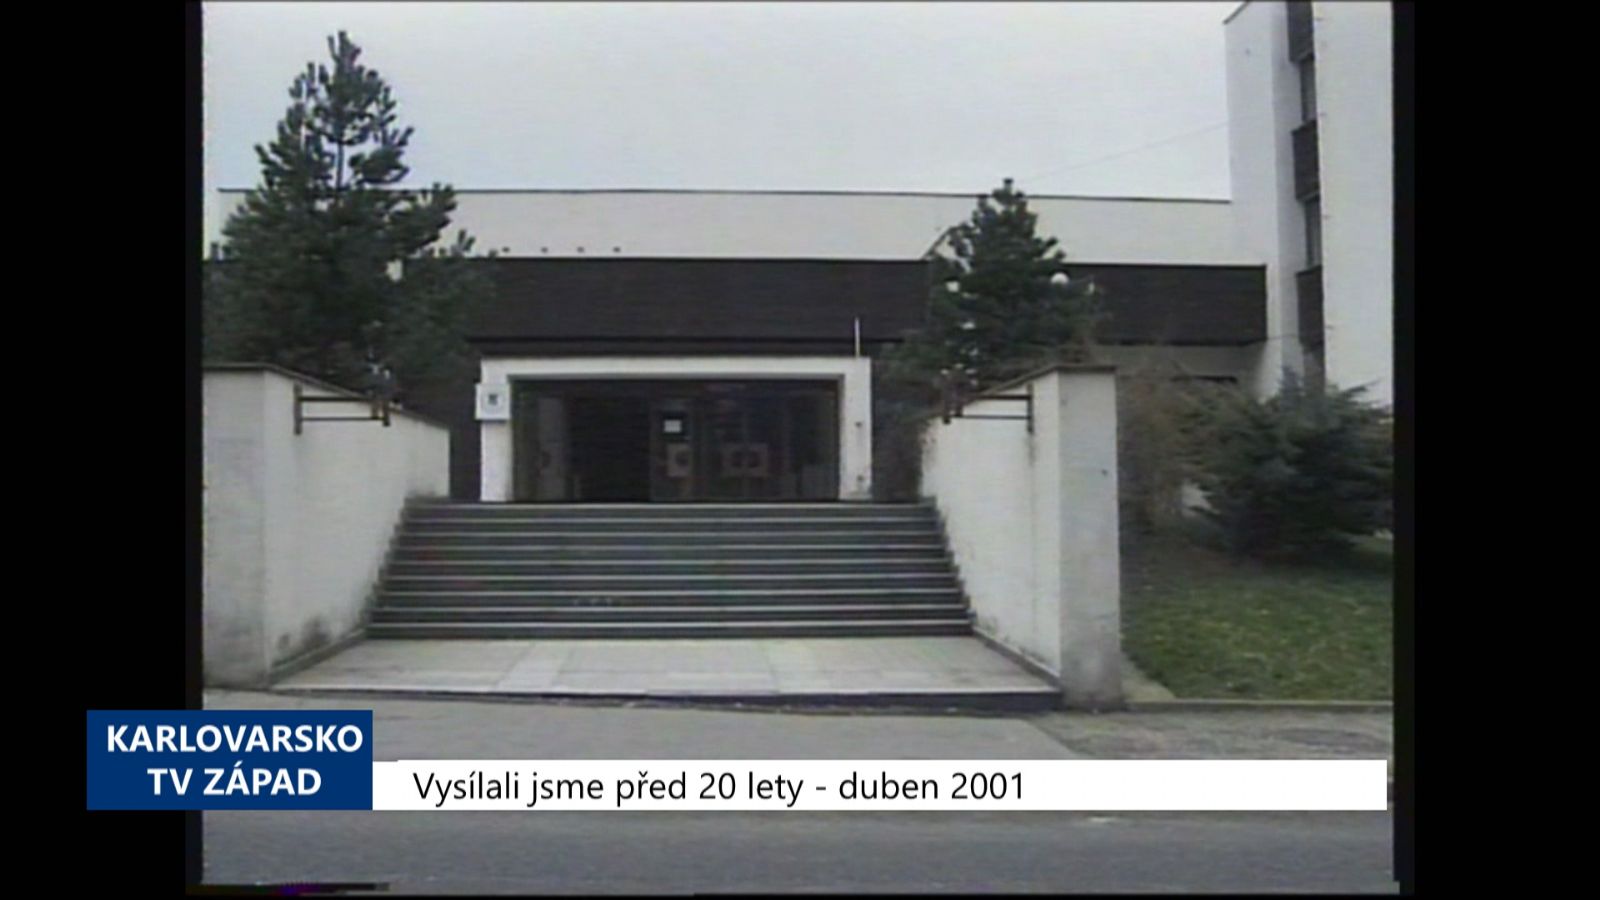 2001 – Cheb: Policejní poradenská místnost je i pro veřejnost (TV Západ)